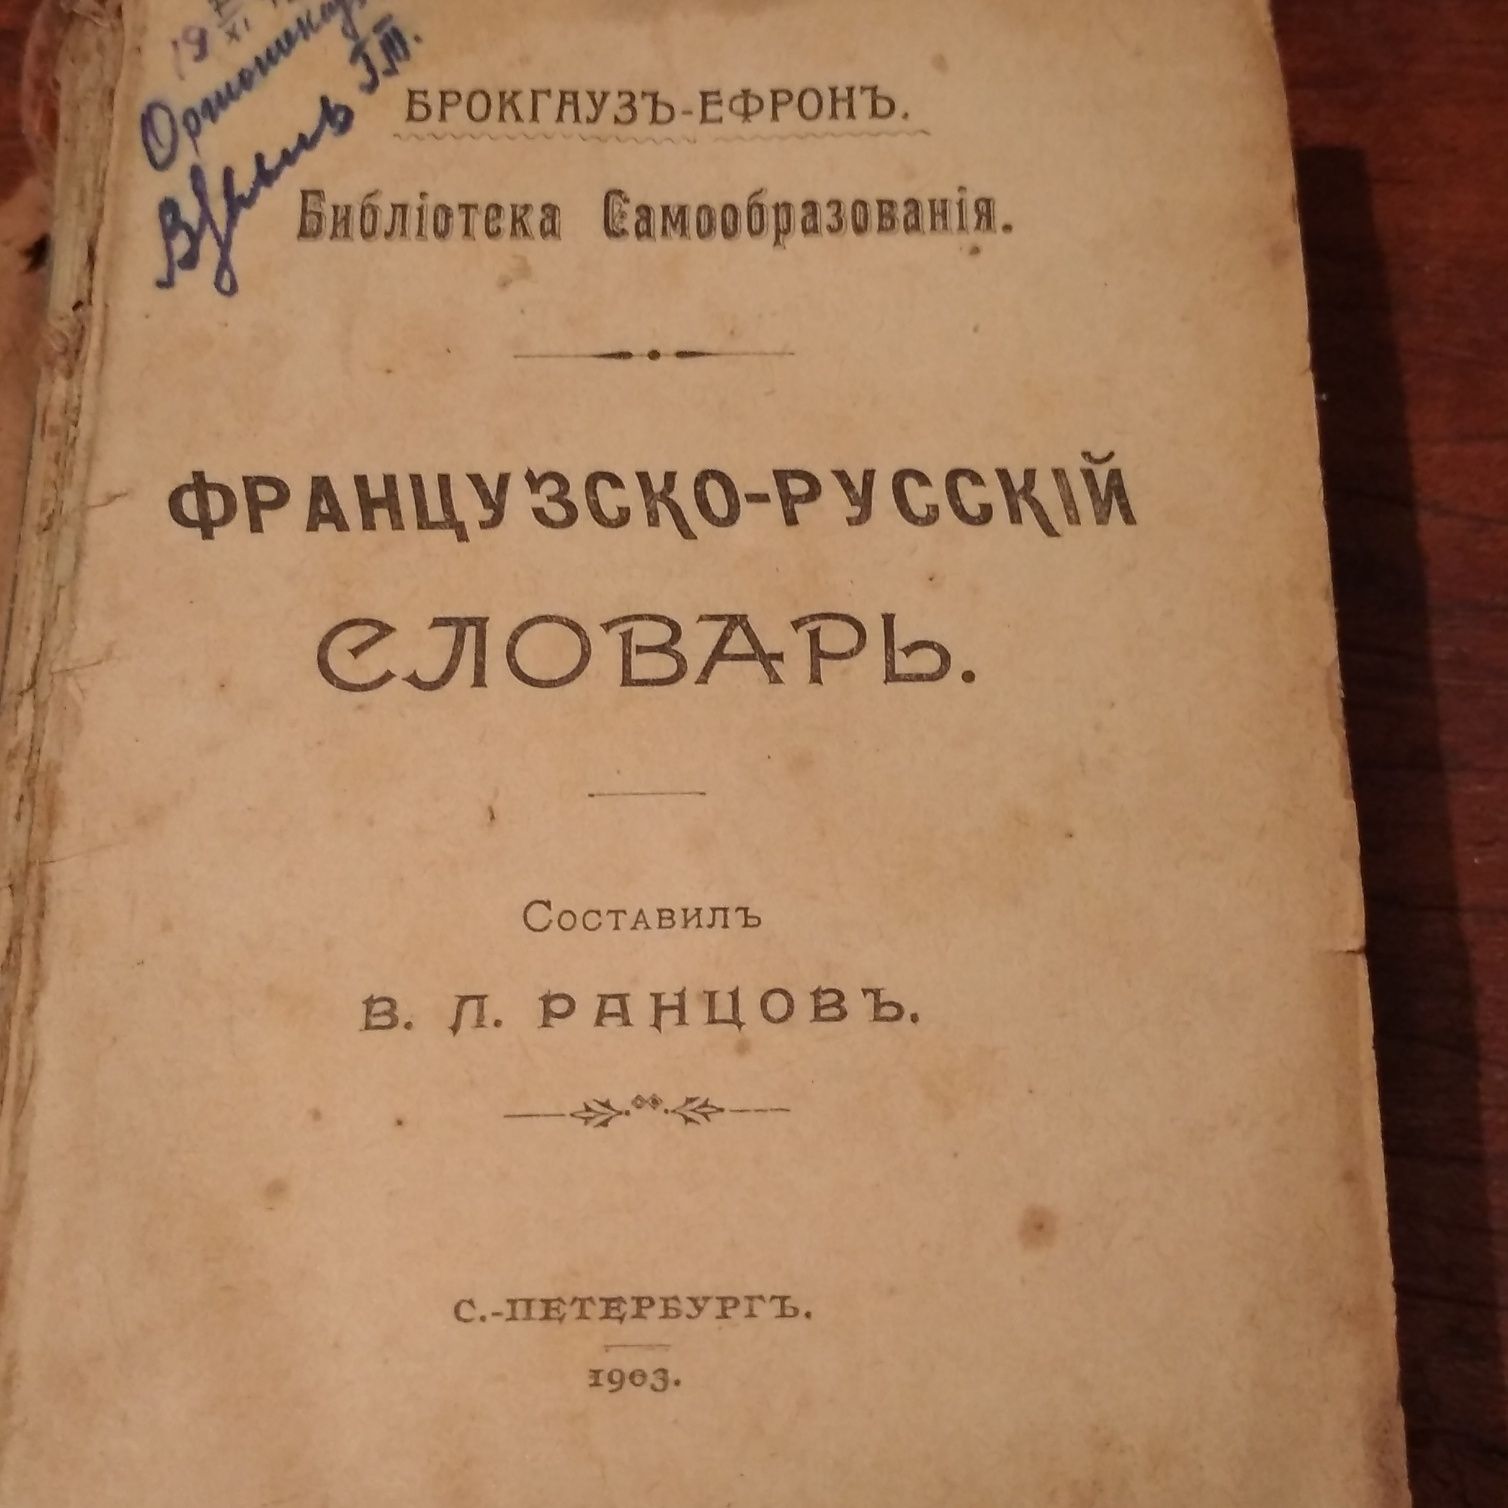 Брокгауз и Ефрон Французко-русский словарь 1903